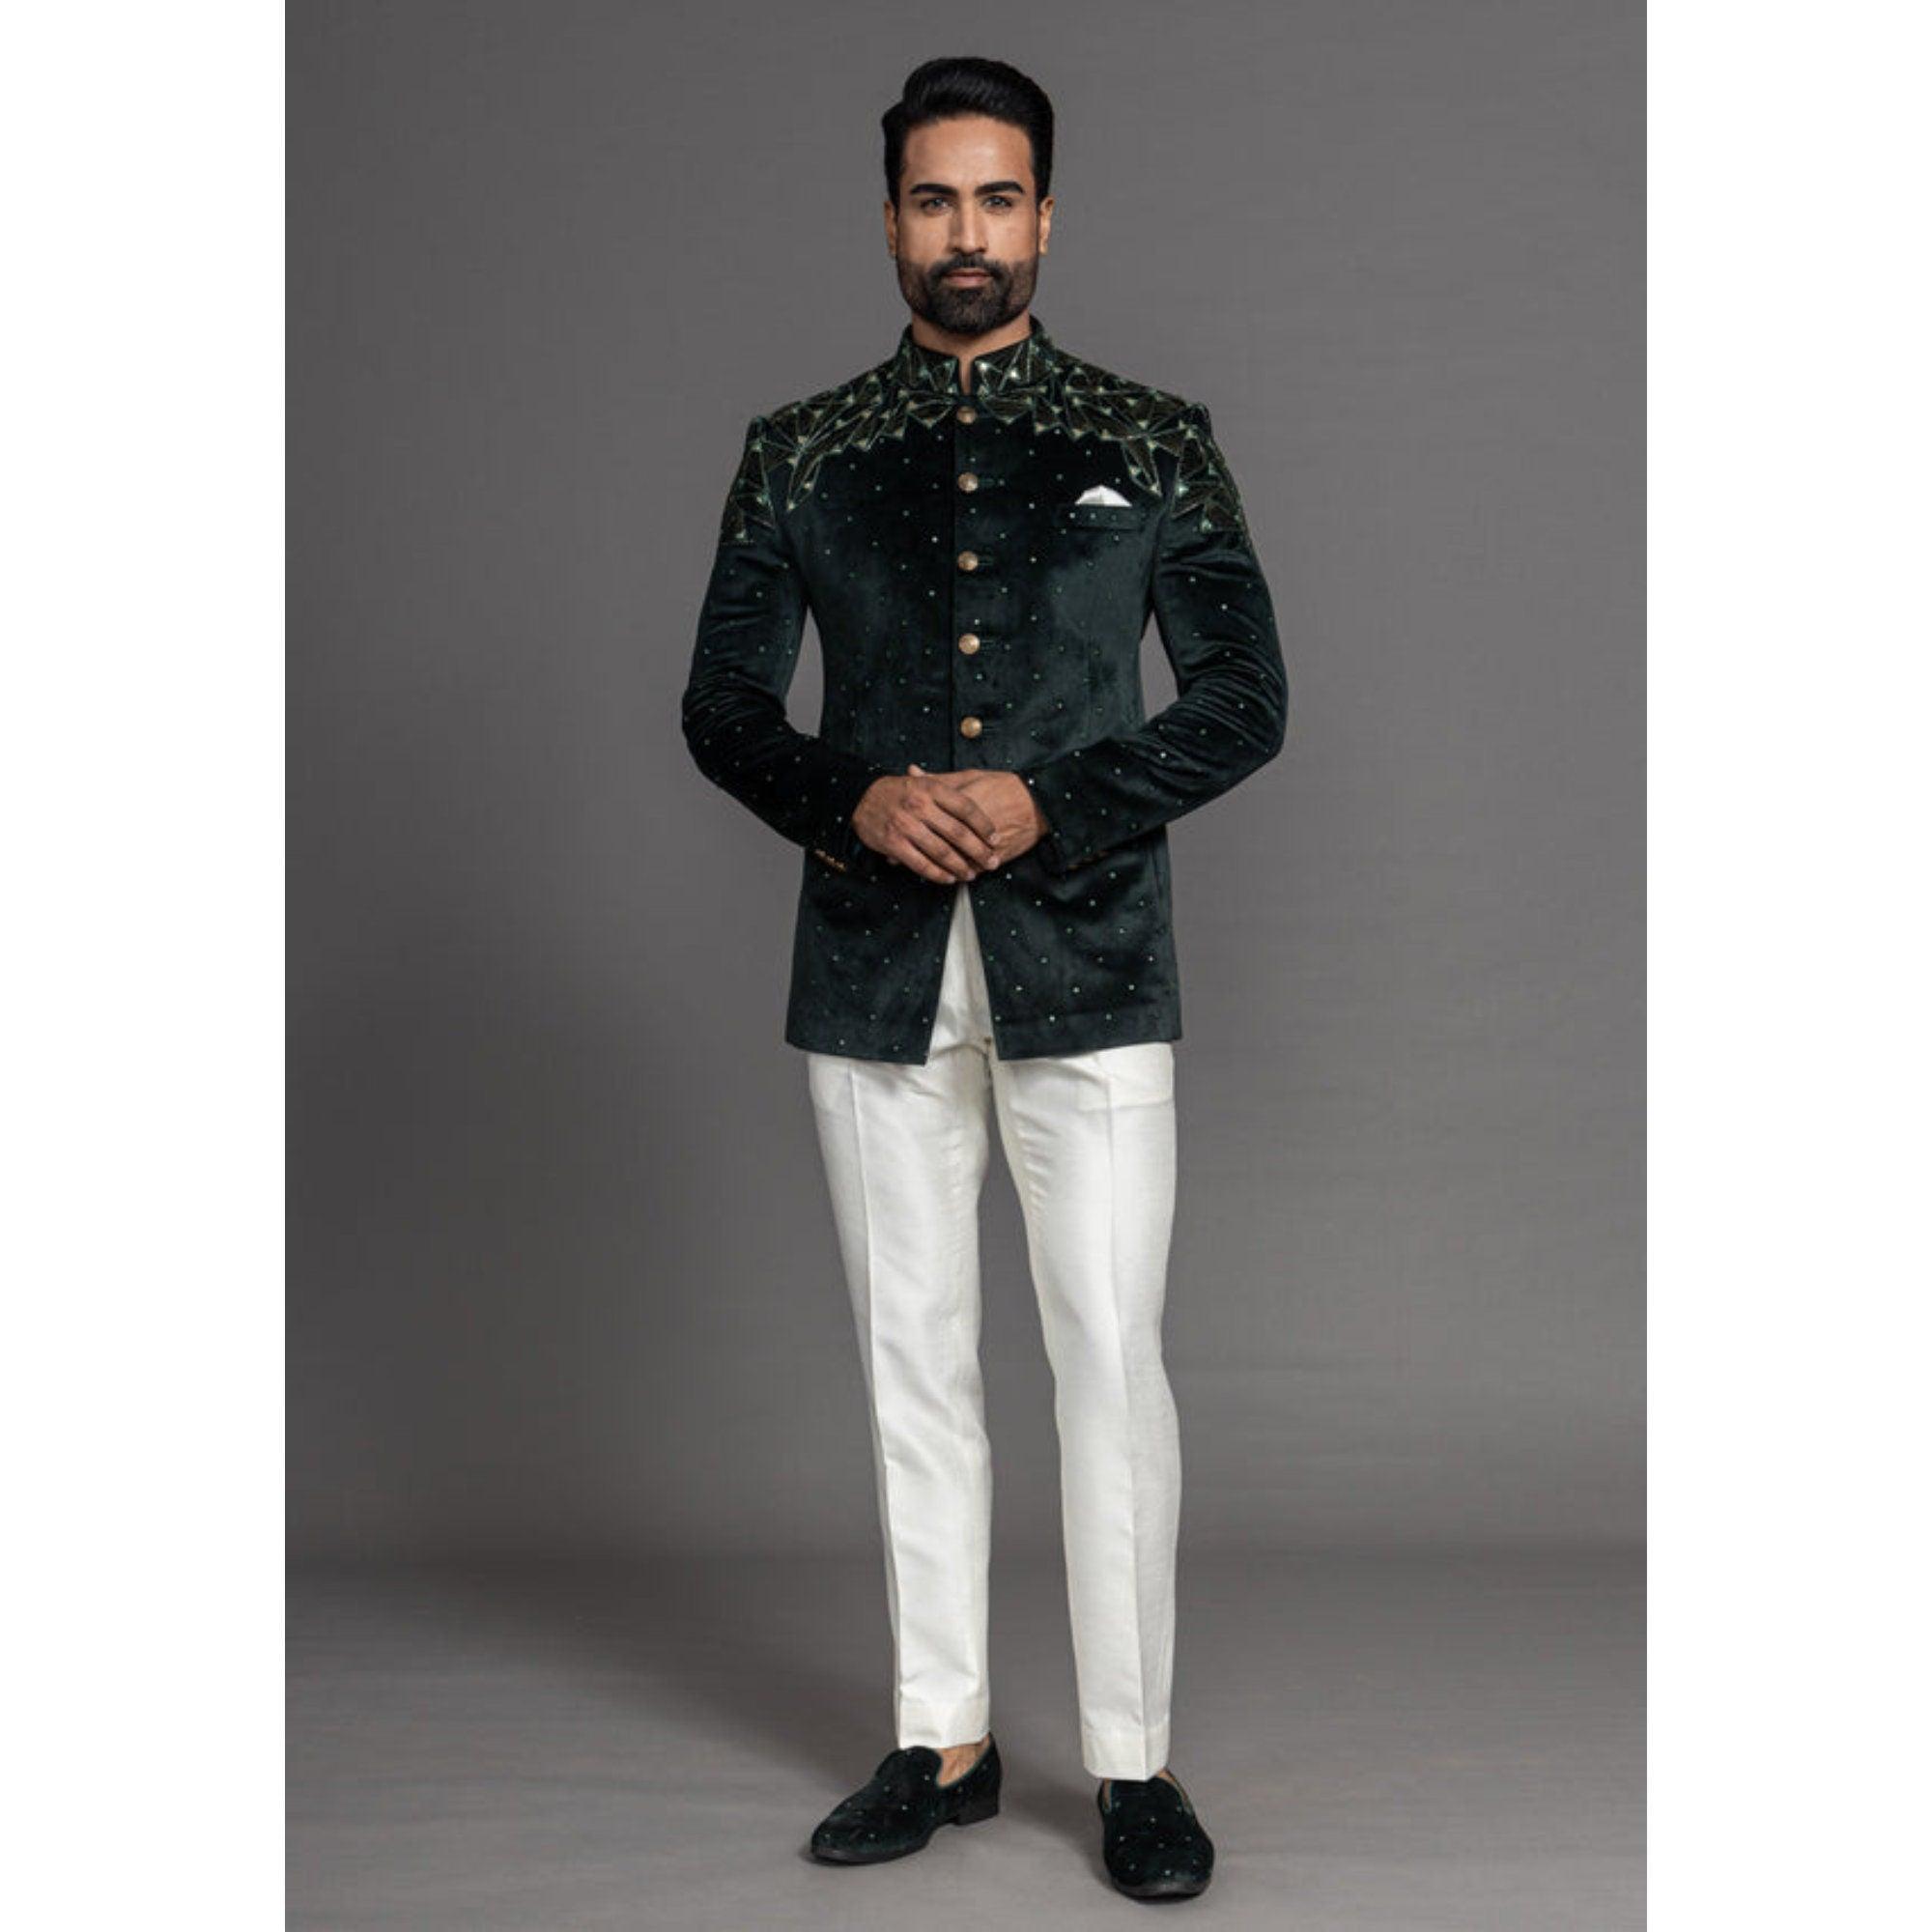 Buy Black Zari Embroidered Italian Jodhpuri Suit Online | Samyakk